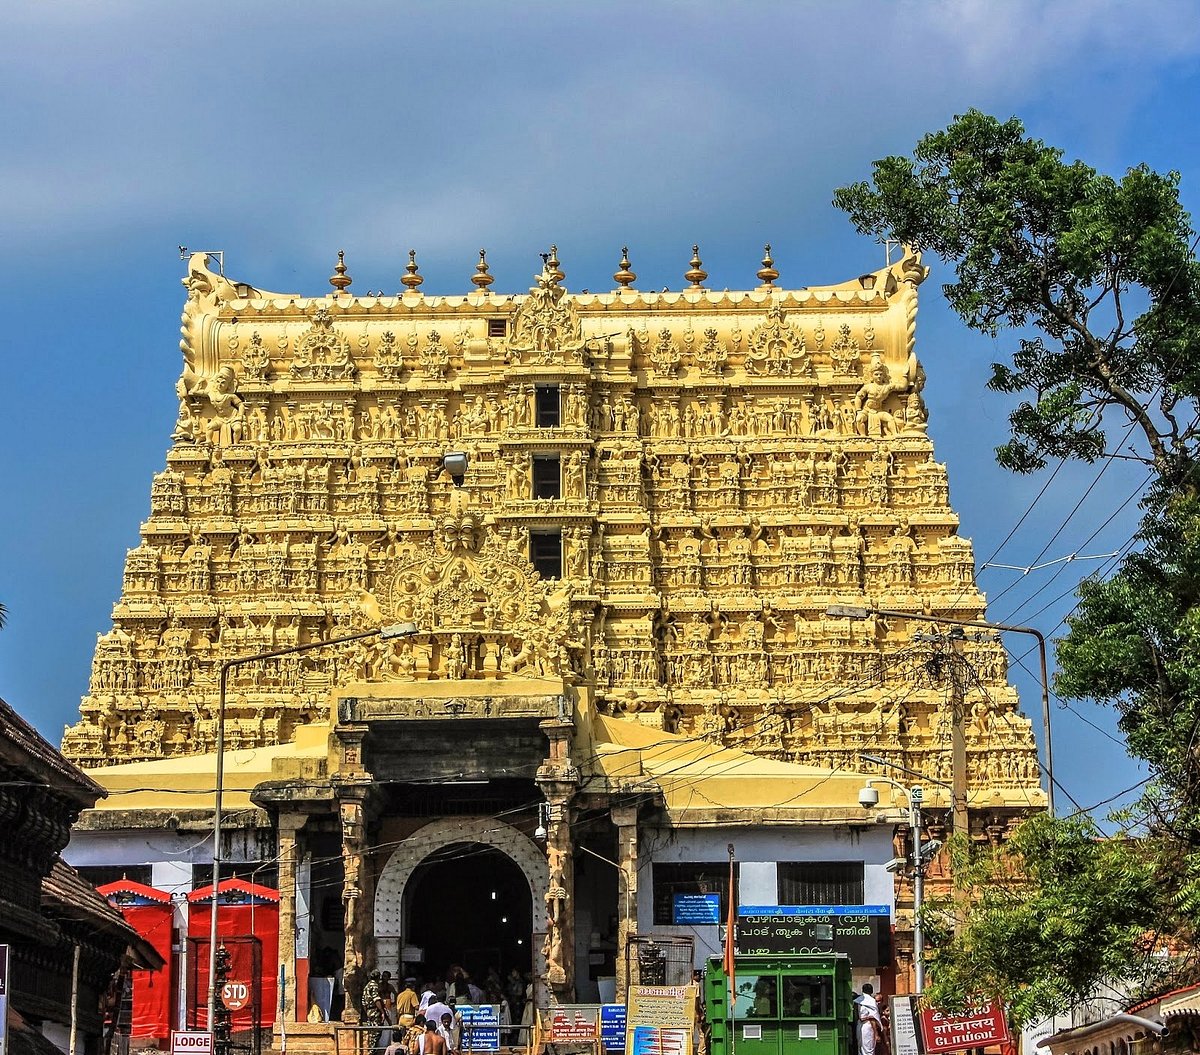 Sree Padmanabhaswamy Temple, Thiruvananthapuram (Trivandrum)